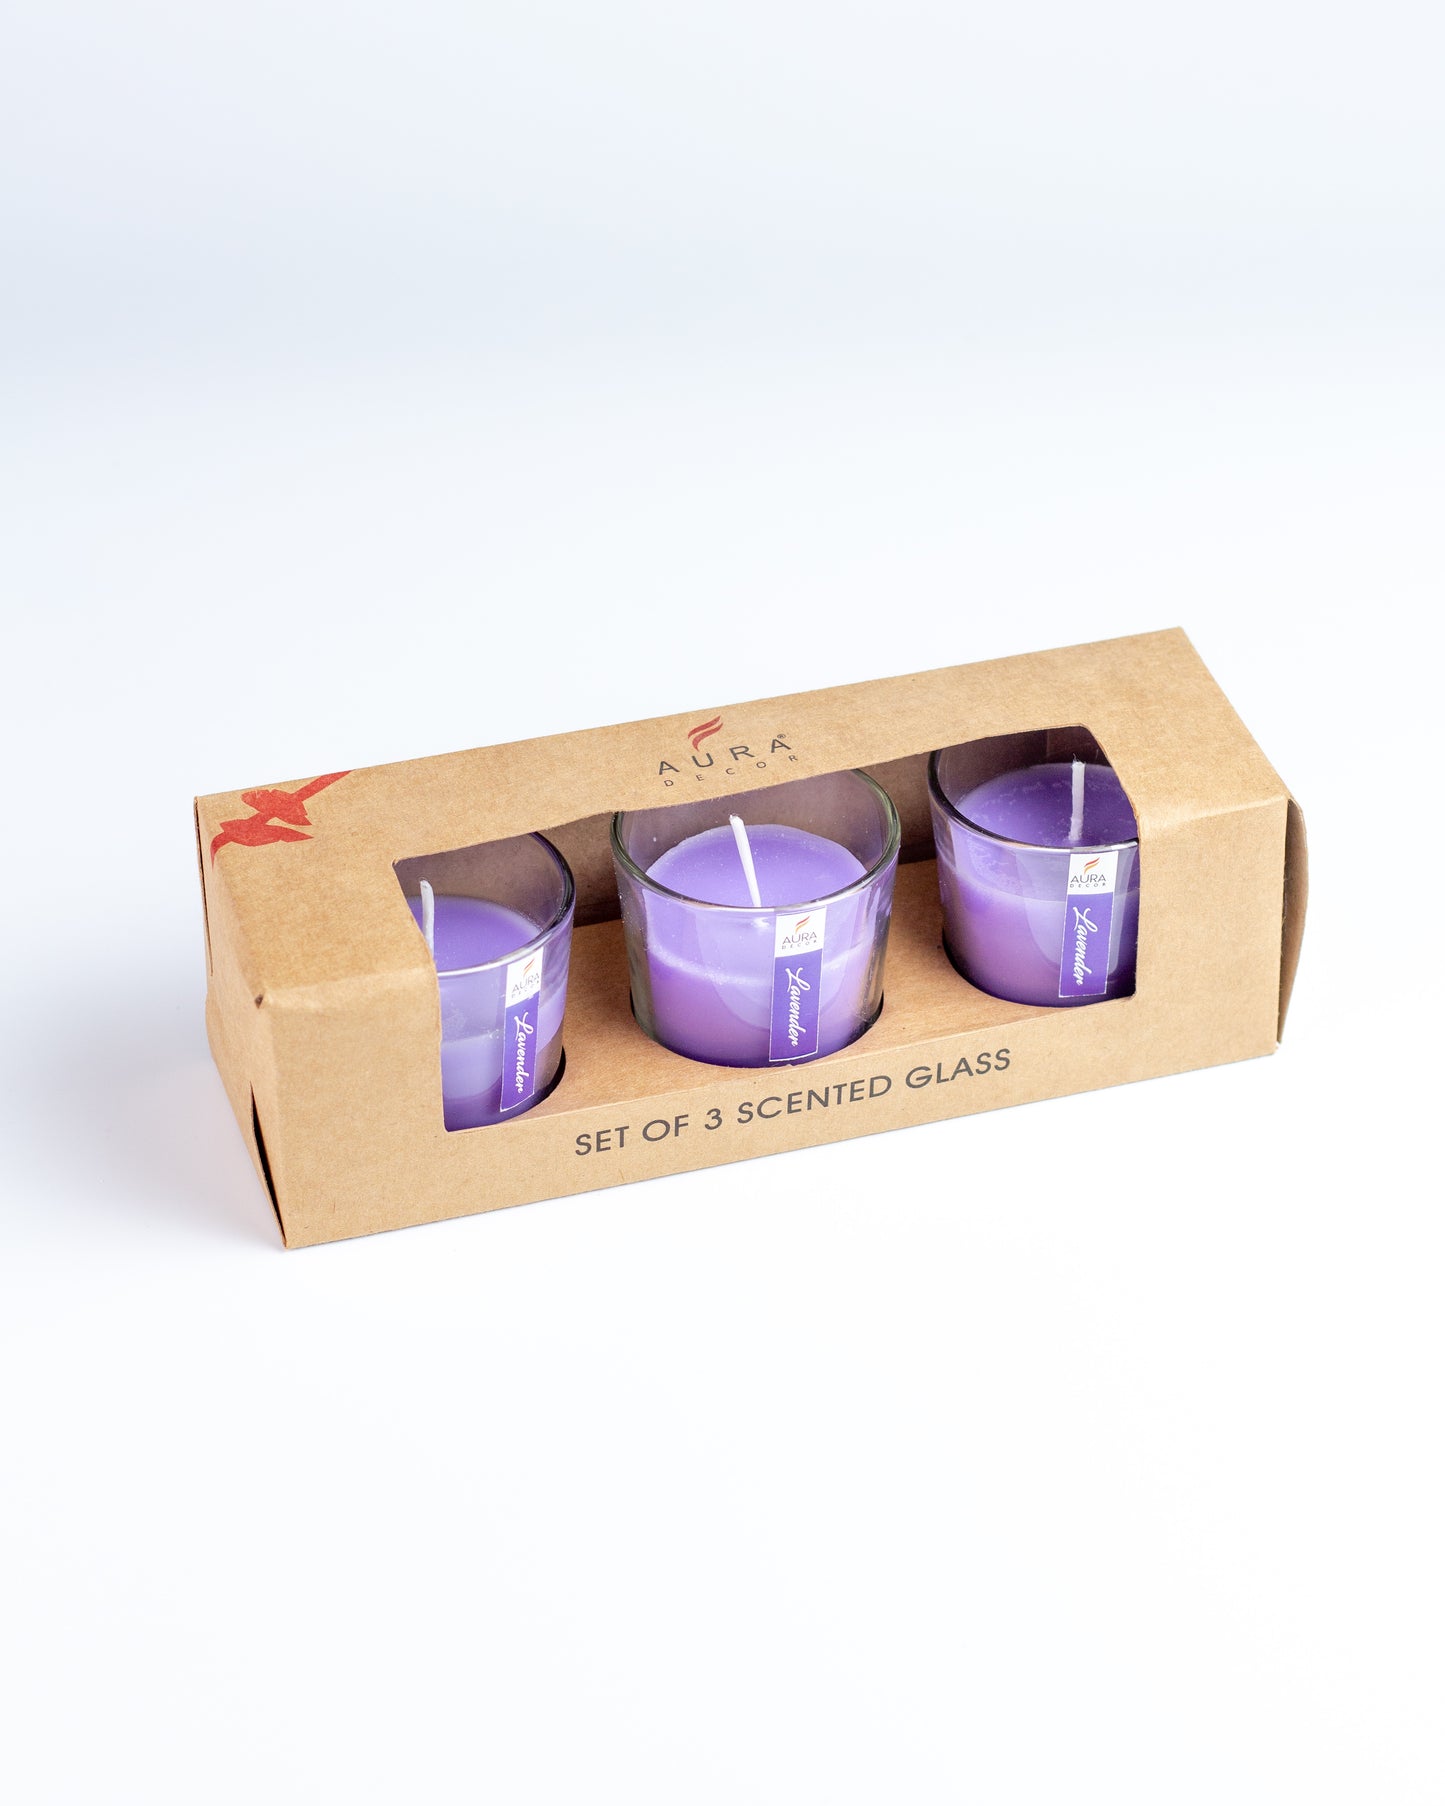 AuraDecor Glass Set of 3 Lavender Fragrance Votive Candle